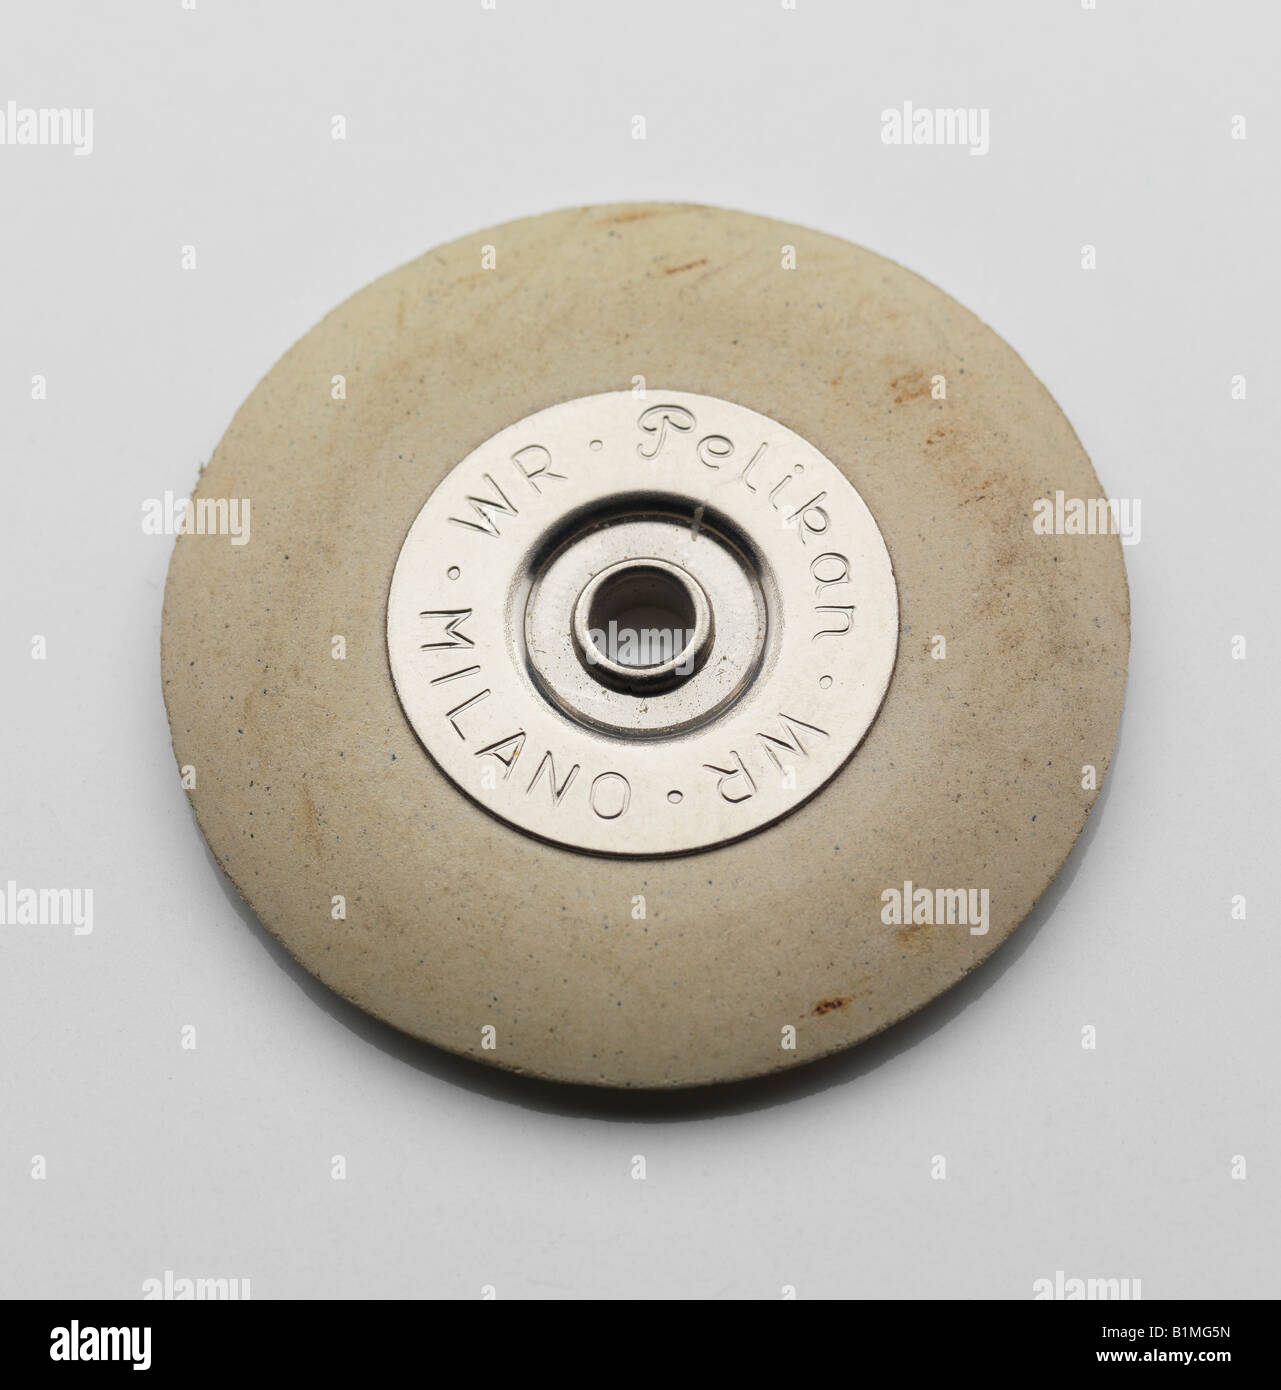 rubber eraser white circle dirty round to erase Stock Photo - Alamy